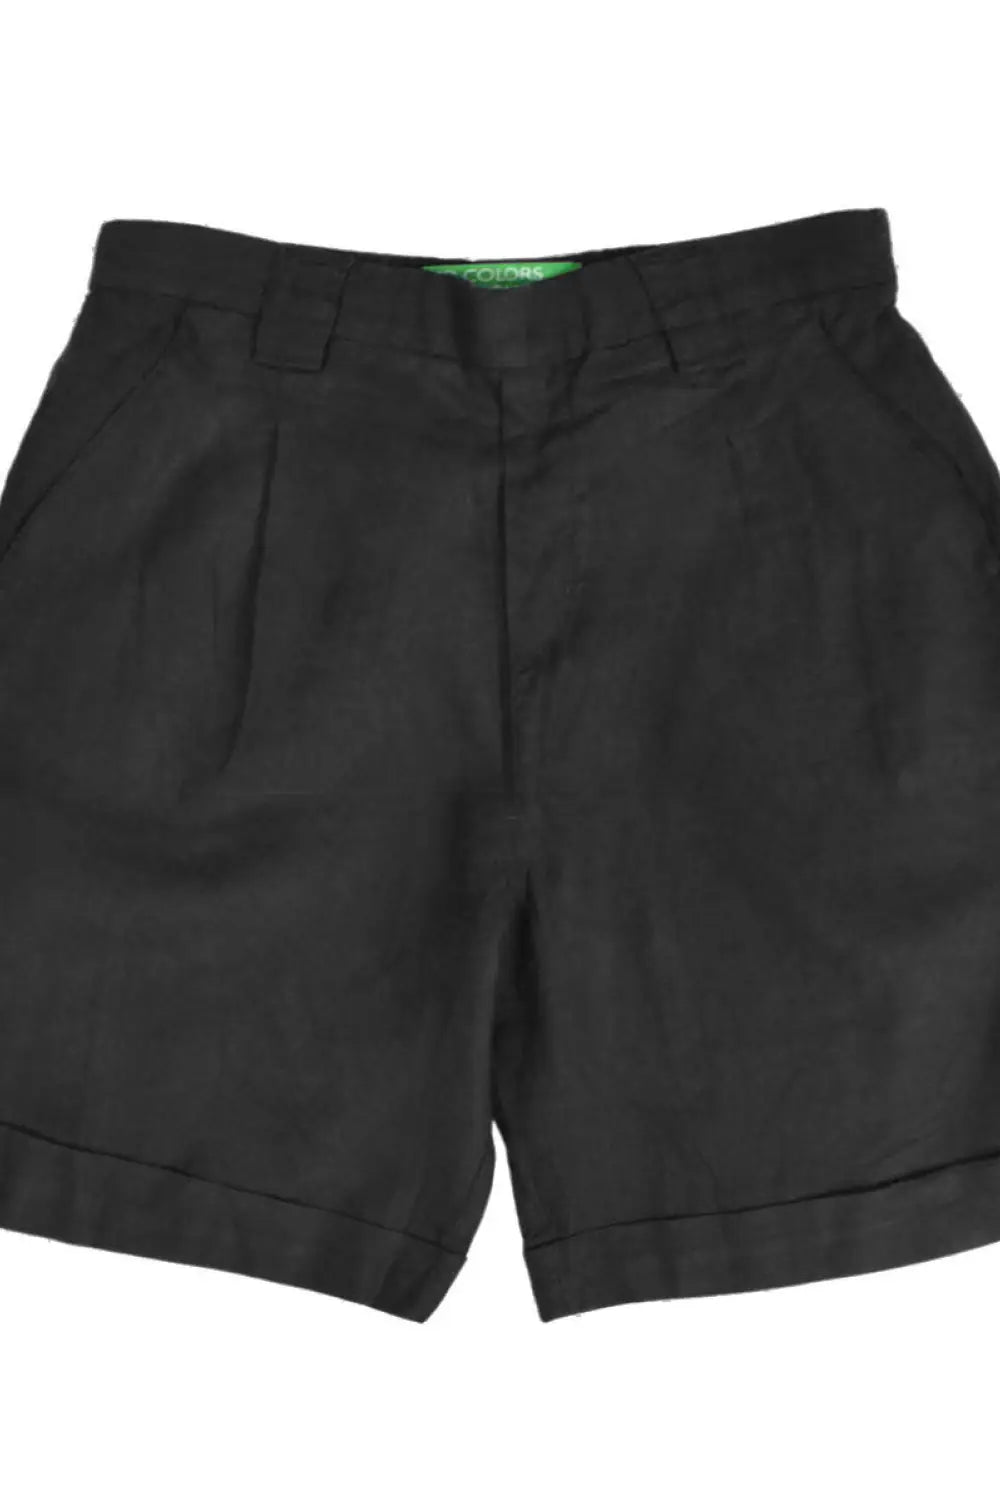 Benetton Wide Leg Linen Shorts